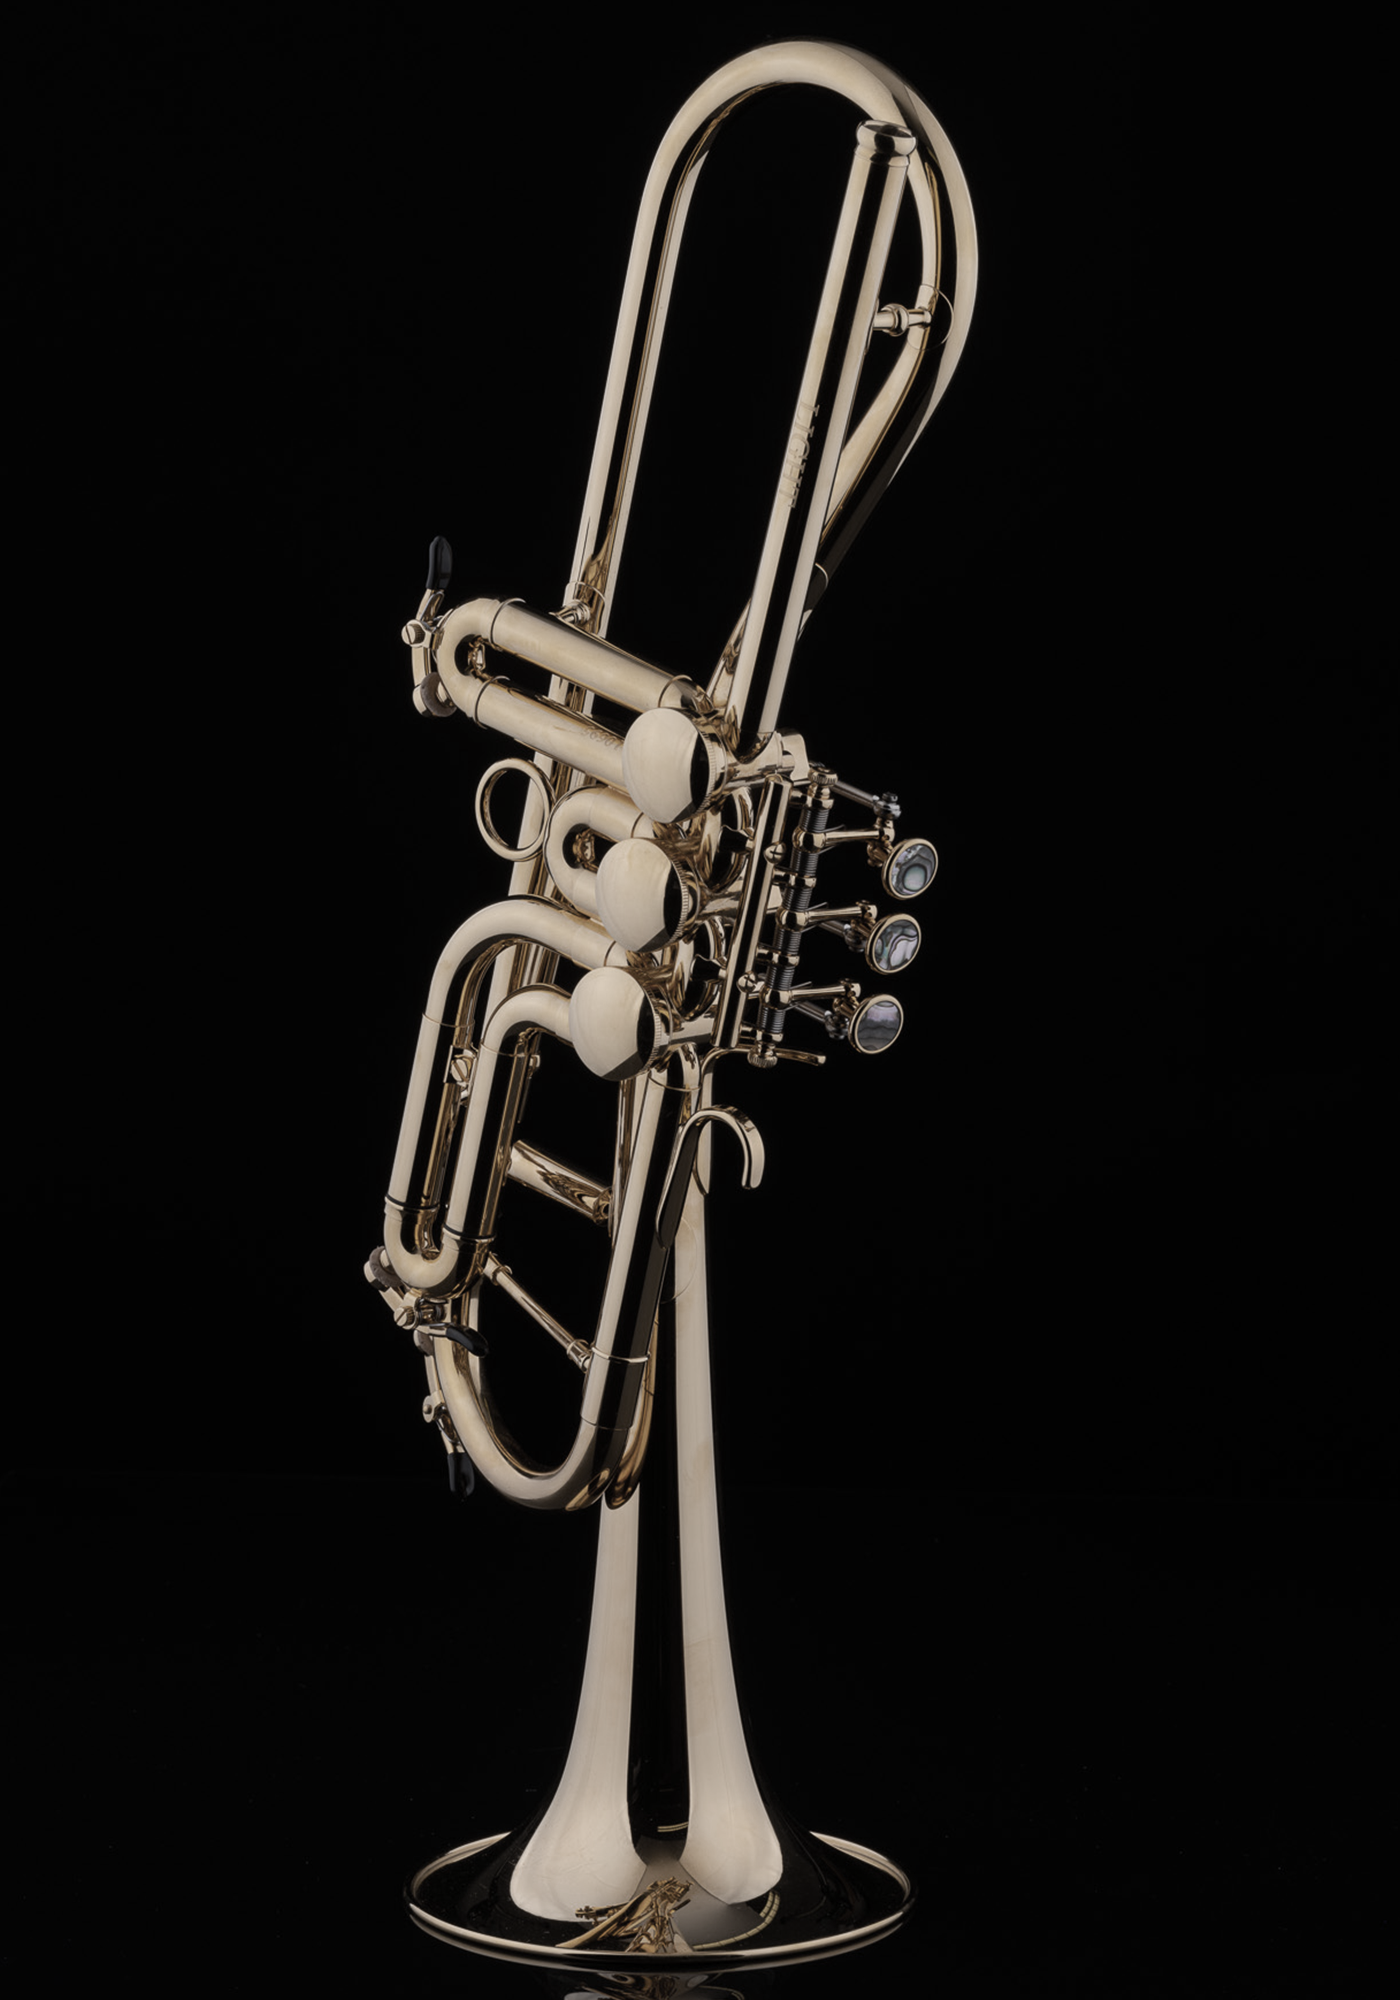 Schagerl Bb-Trumpet "GANSCHHORN" 2021 lacquered